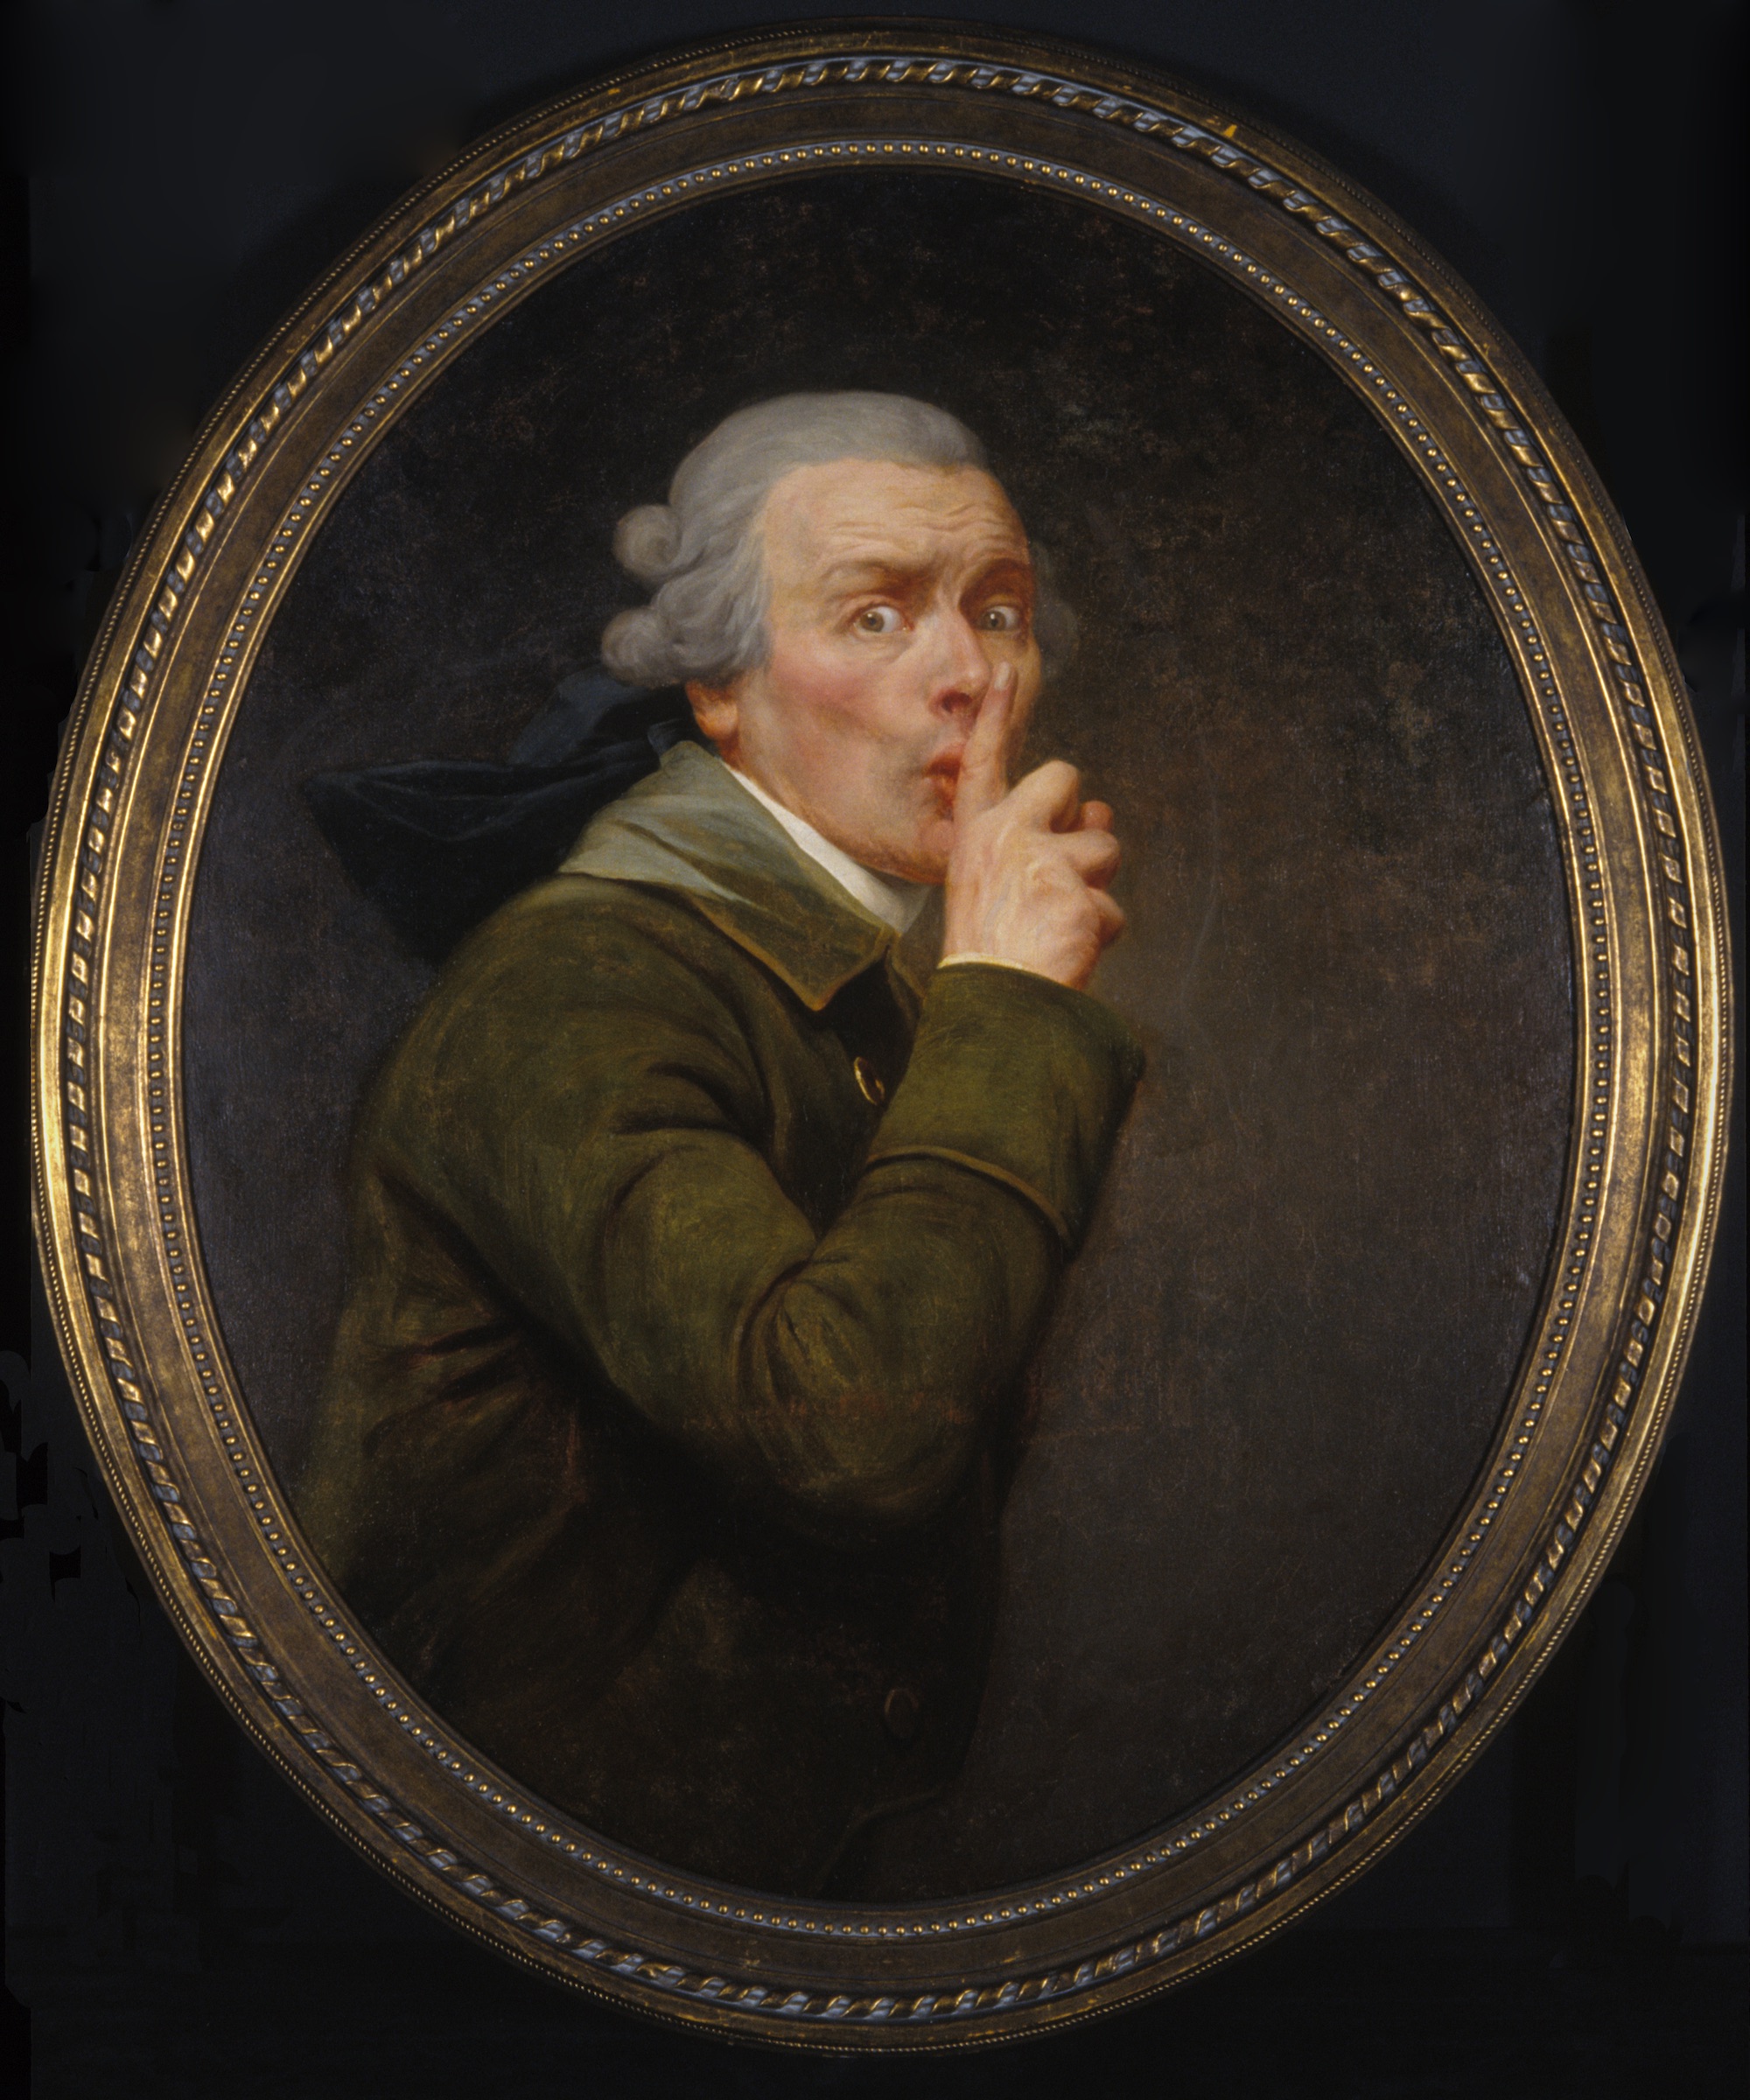 Le Discret by Joseph Ducreux - circa 1791 - 91.6 x 79.9 cm Spencer Museum of Art